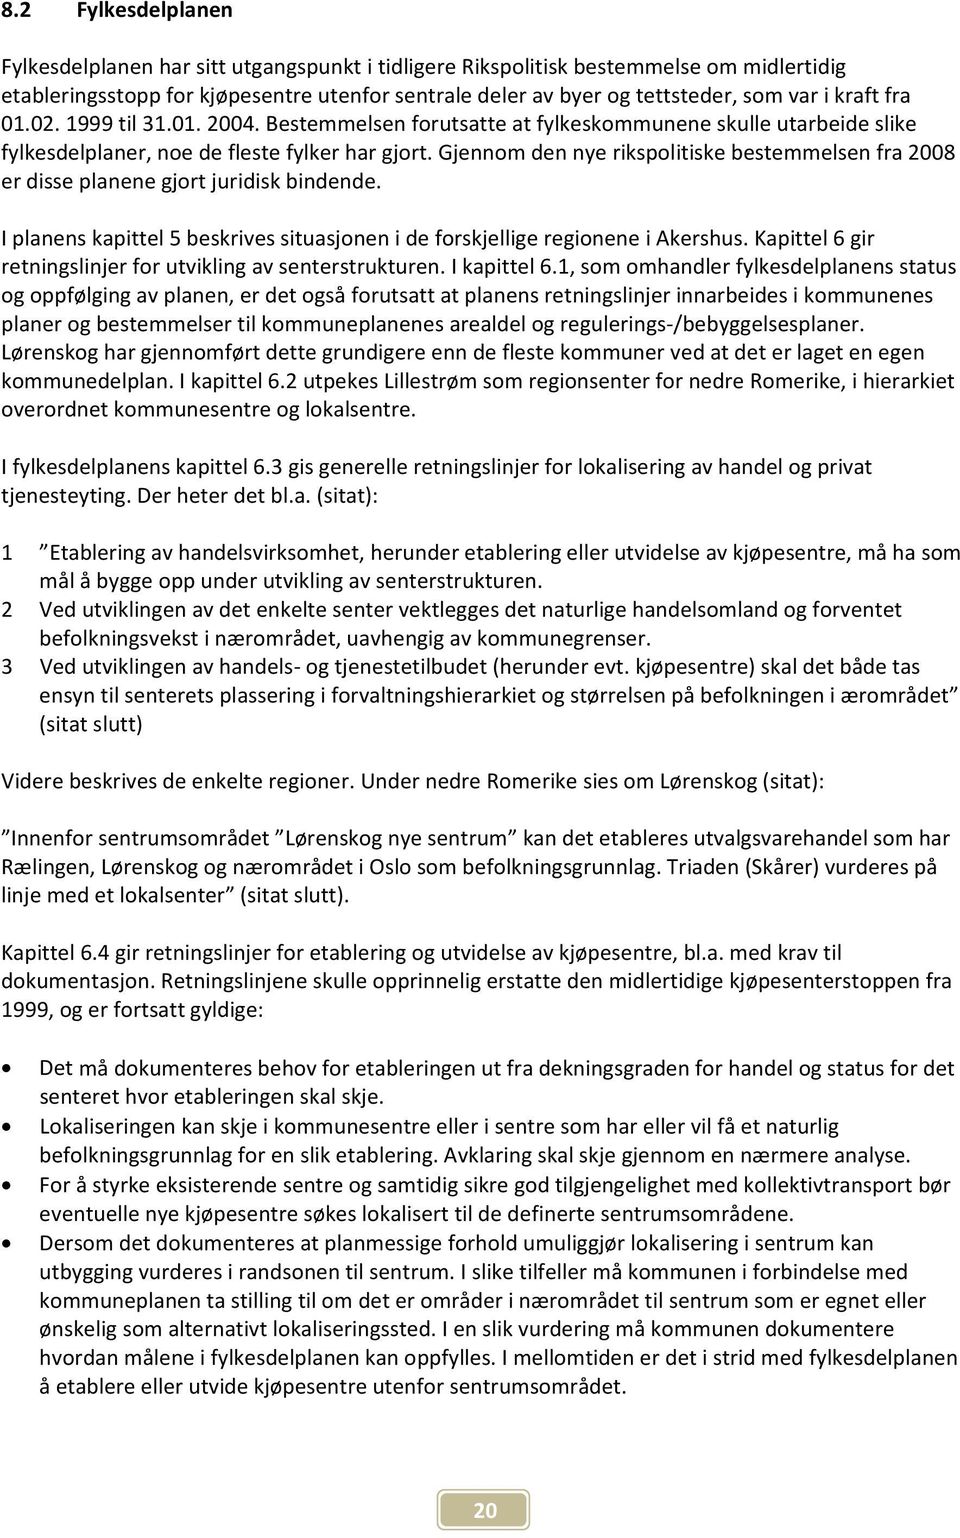 Gjennom den nye rikspolitiske bestemmelsen fra 2008 er disse planene gjort juridisk bindende. I planens kapittel 5 beskrives situasjonen i de forskjellige regionene i Akershus.